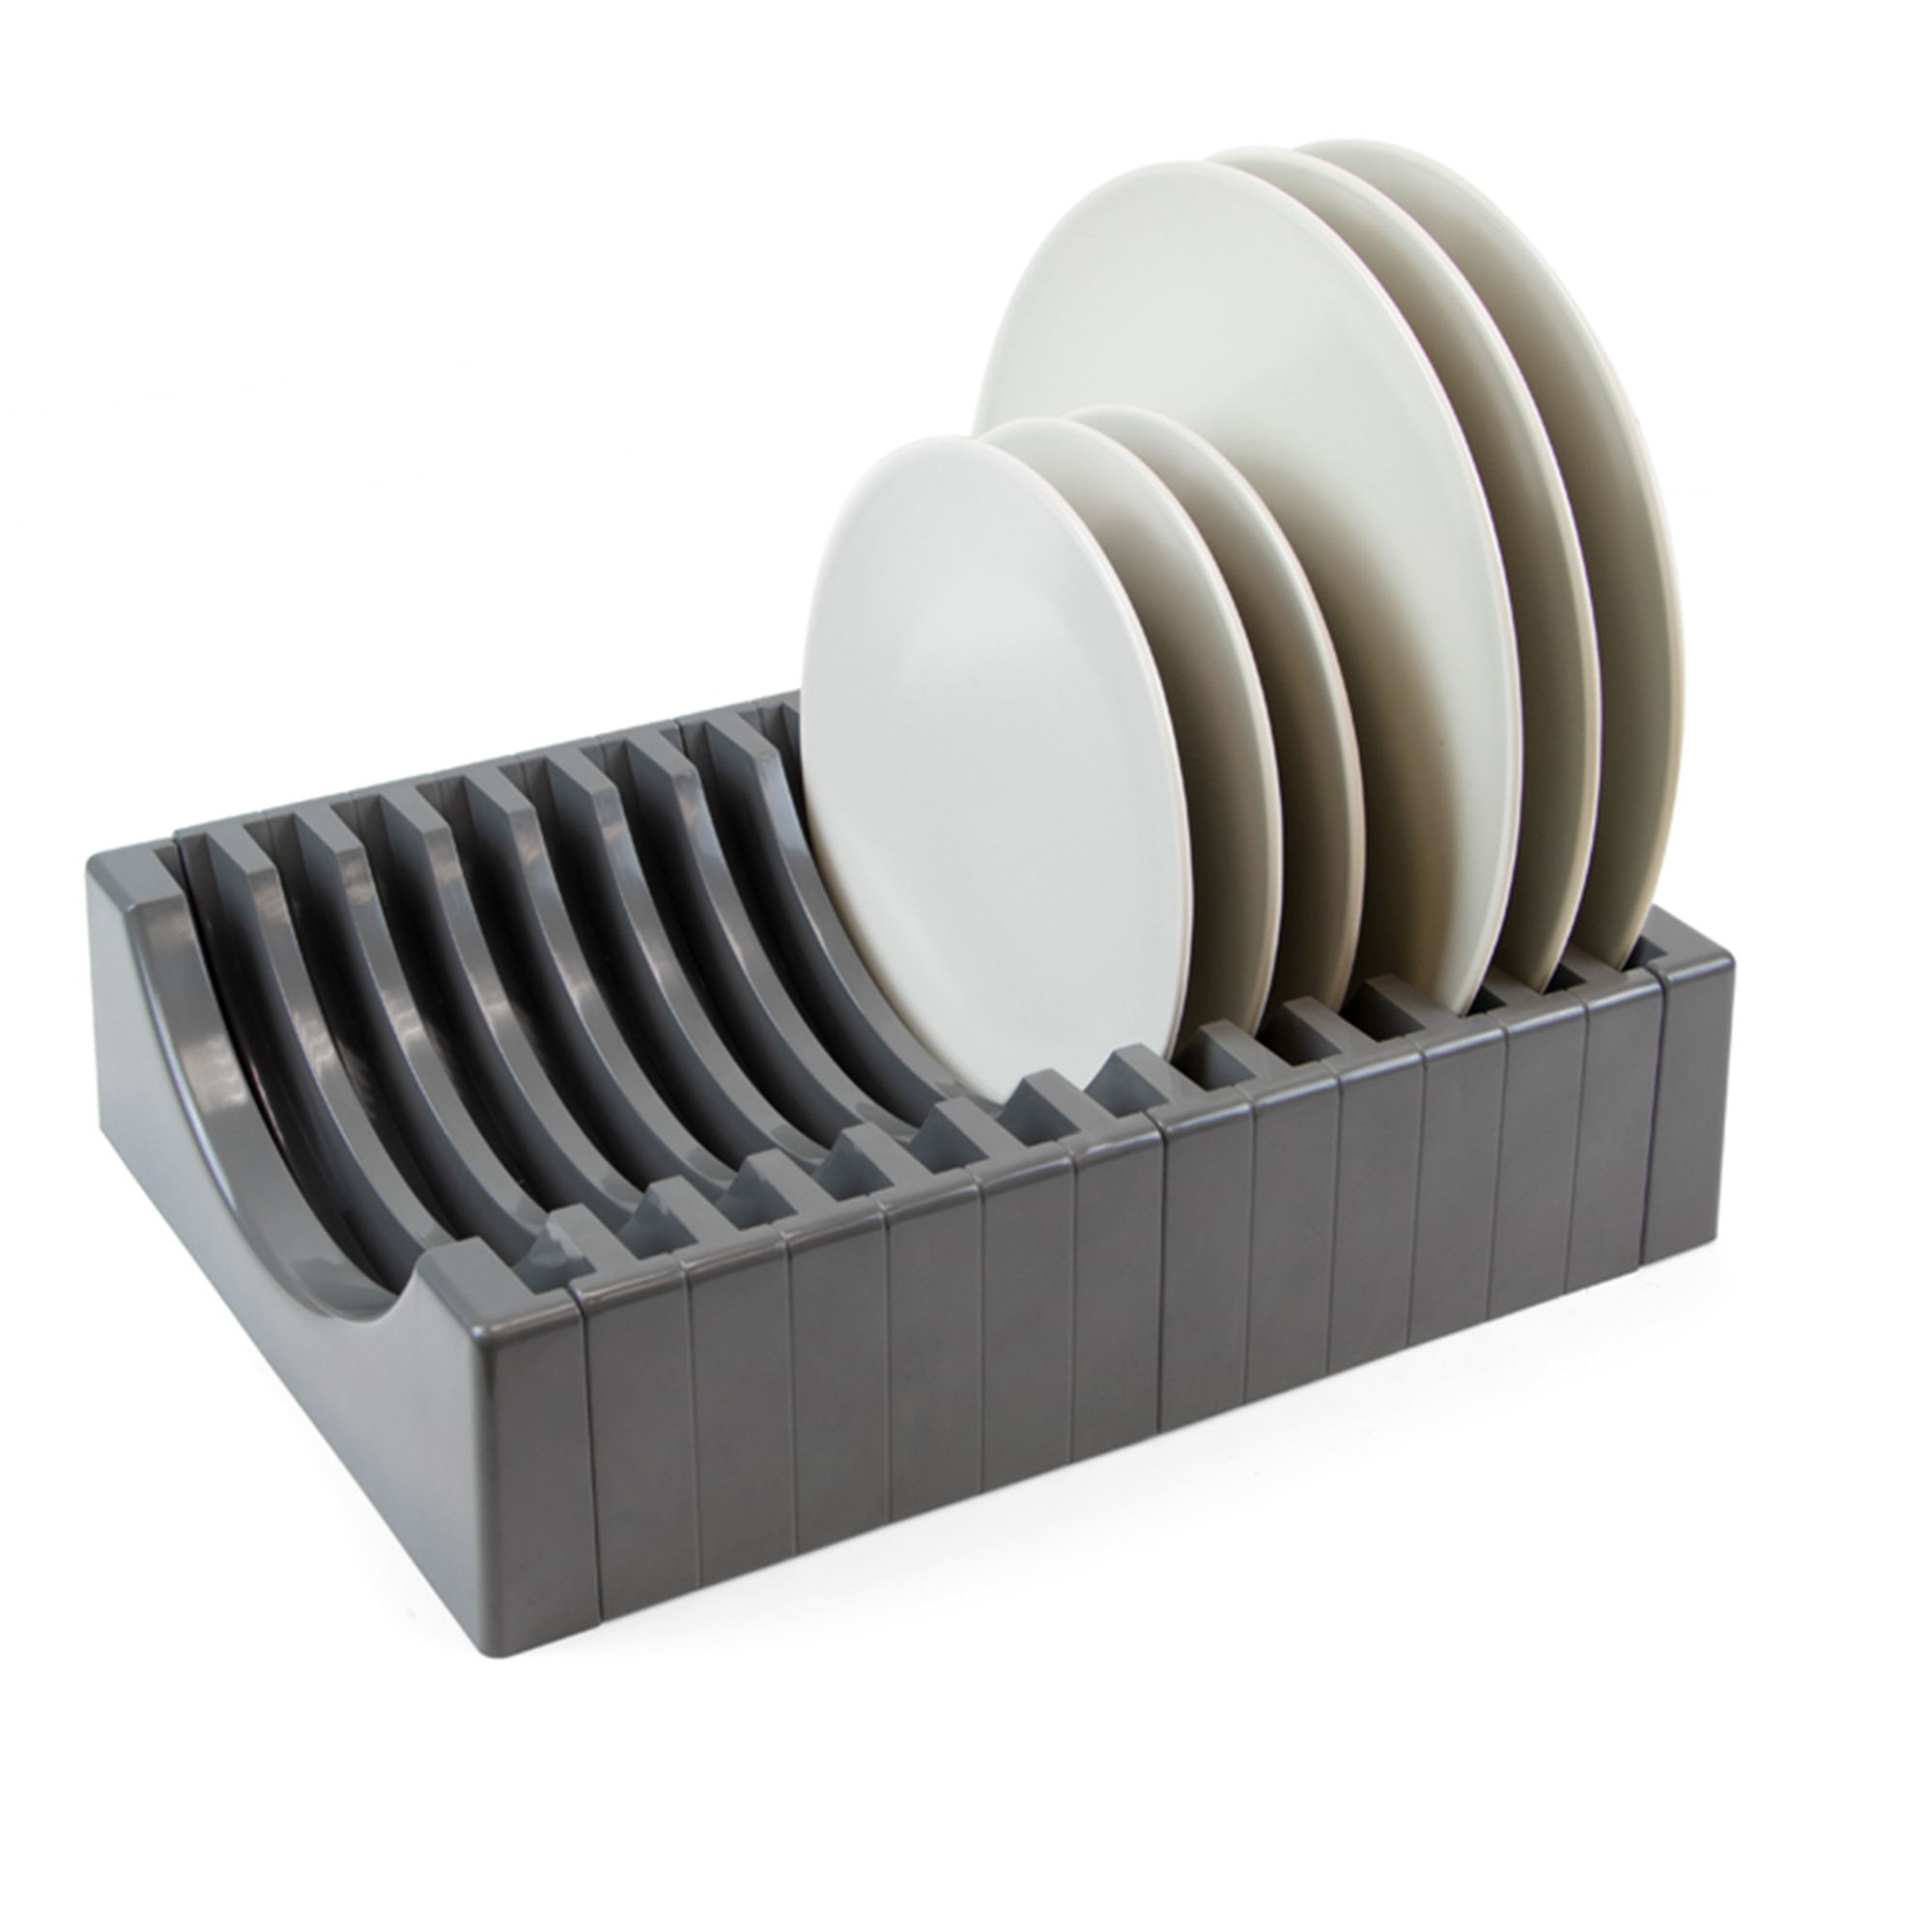  Porte-assiettes pour meuble avec capacite 13 assiettes, Plastique gris antracite, Plastique